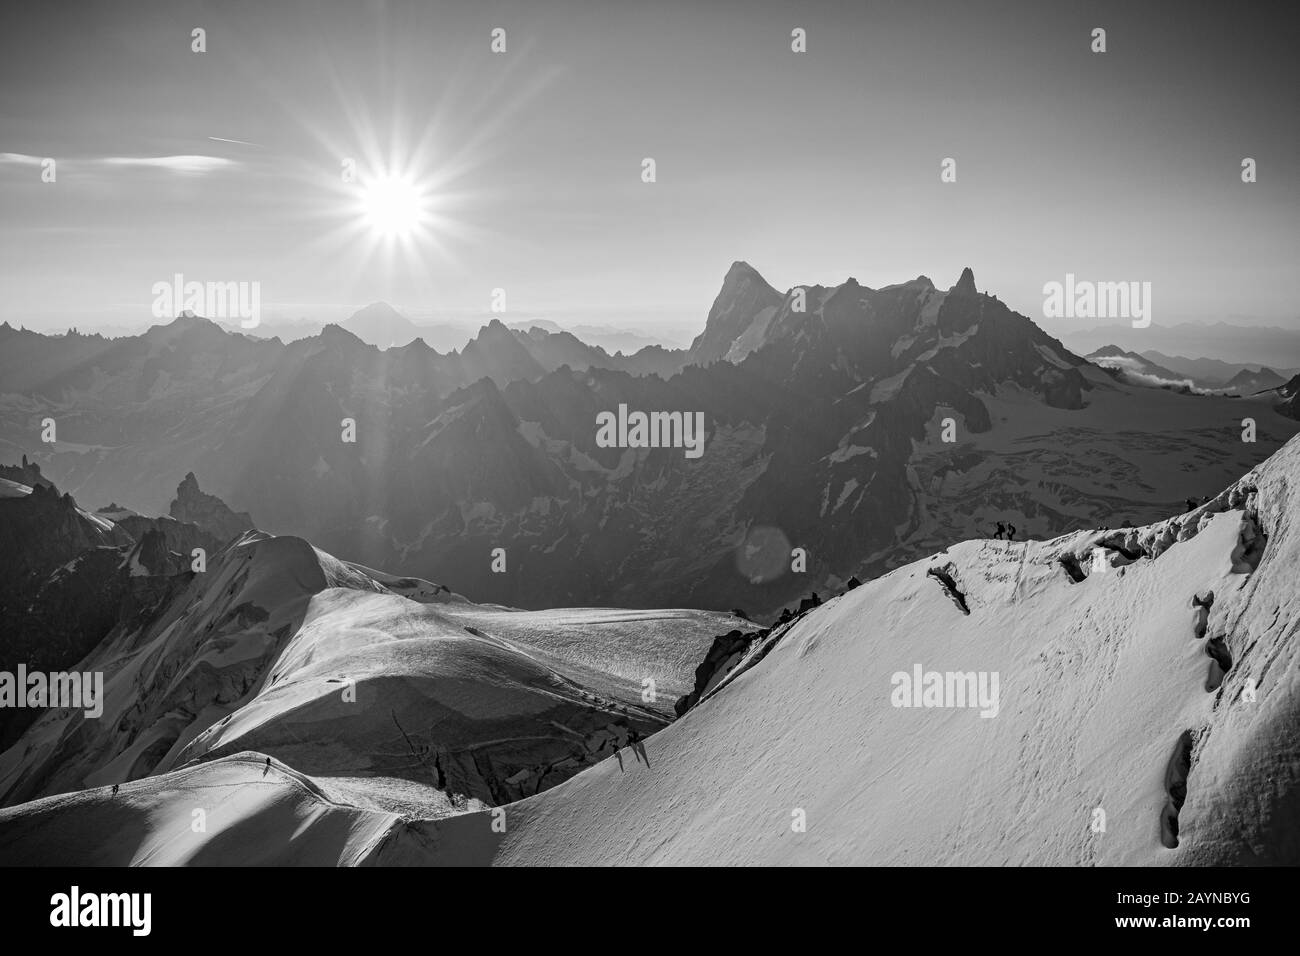 Vue sur le paysage noir et blanc des randonneurs qui grimpent au Mont Blanc un matin ensoleillé depuis la gare de l'aiguille du midi, Chamonix, France Banque D'Images